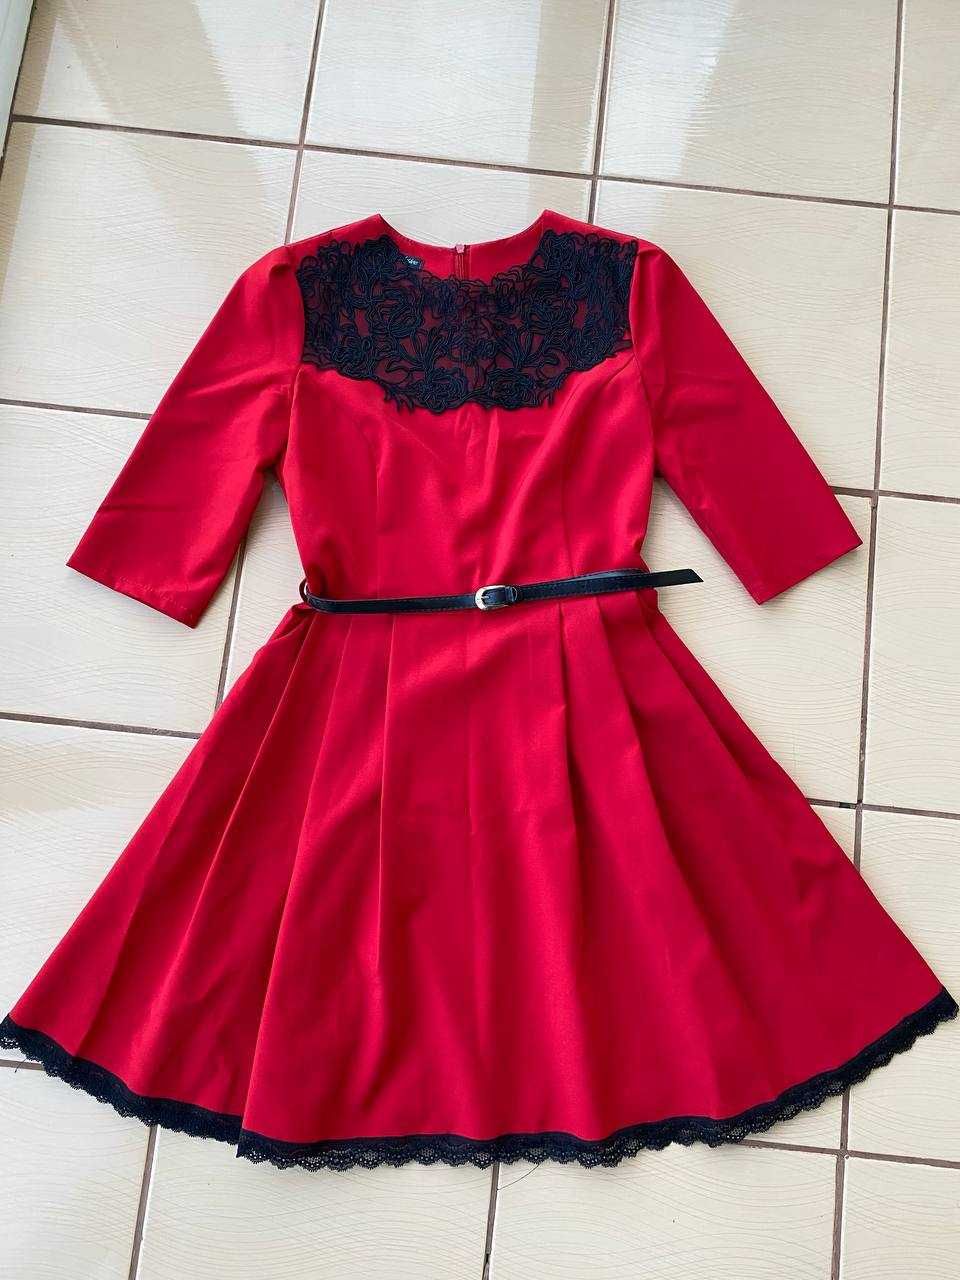 Червоне плаття. Розмір М/L.